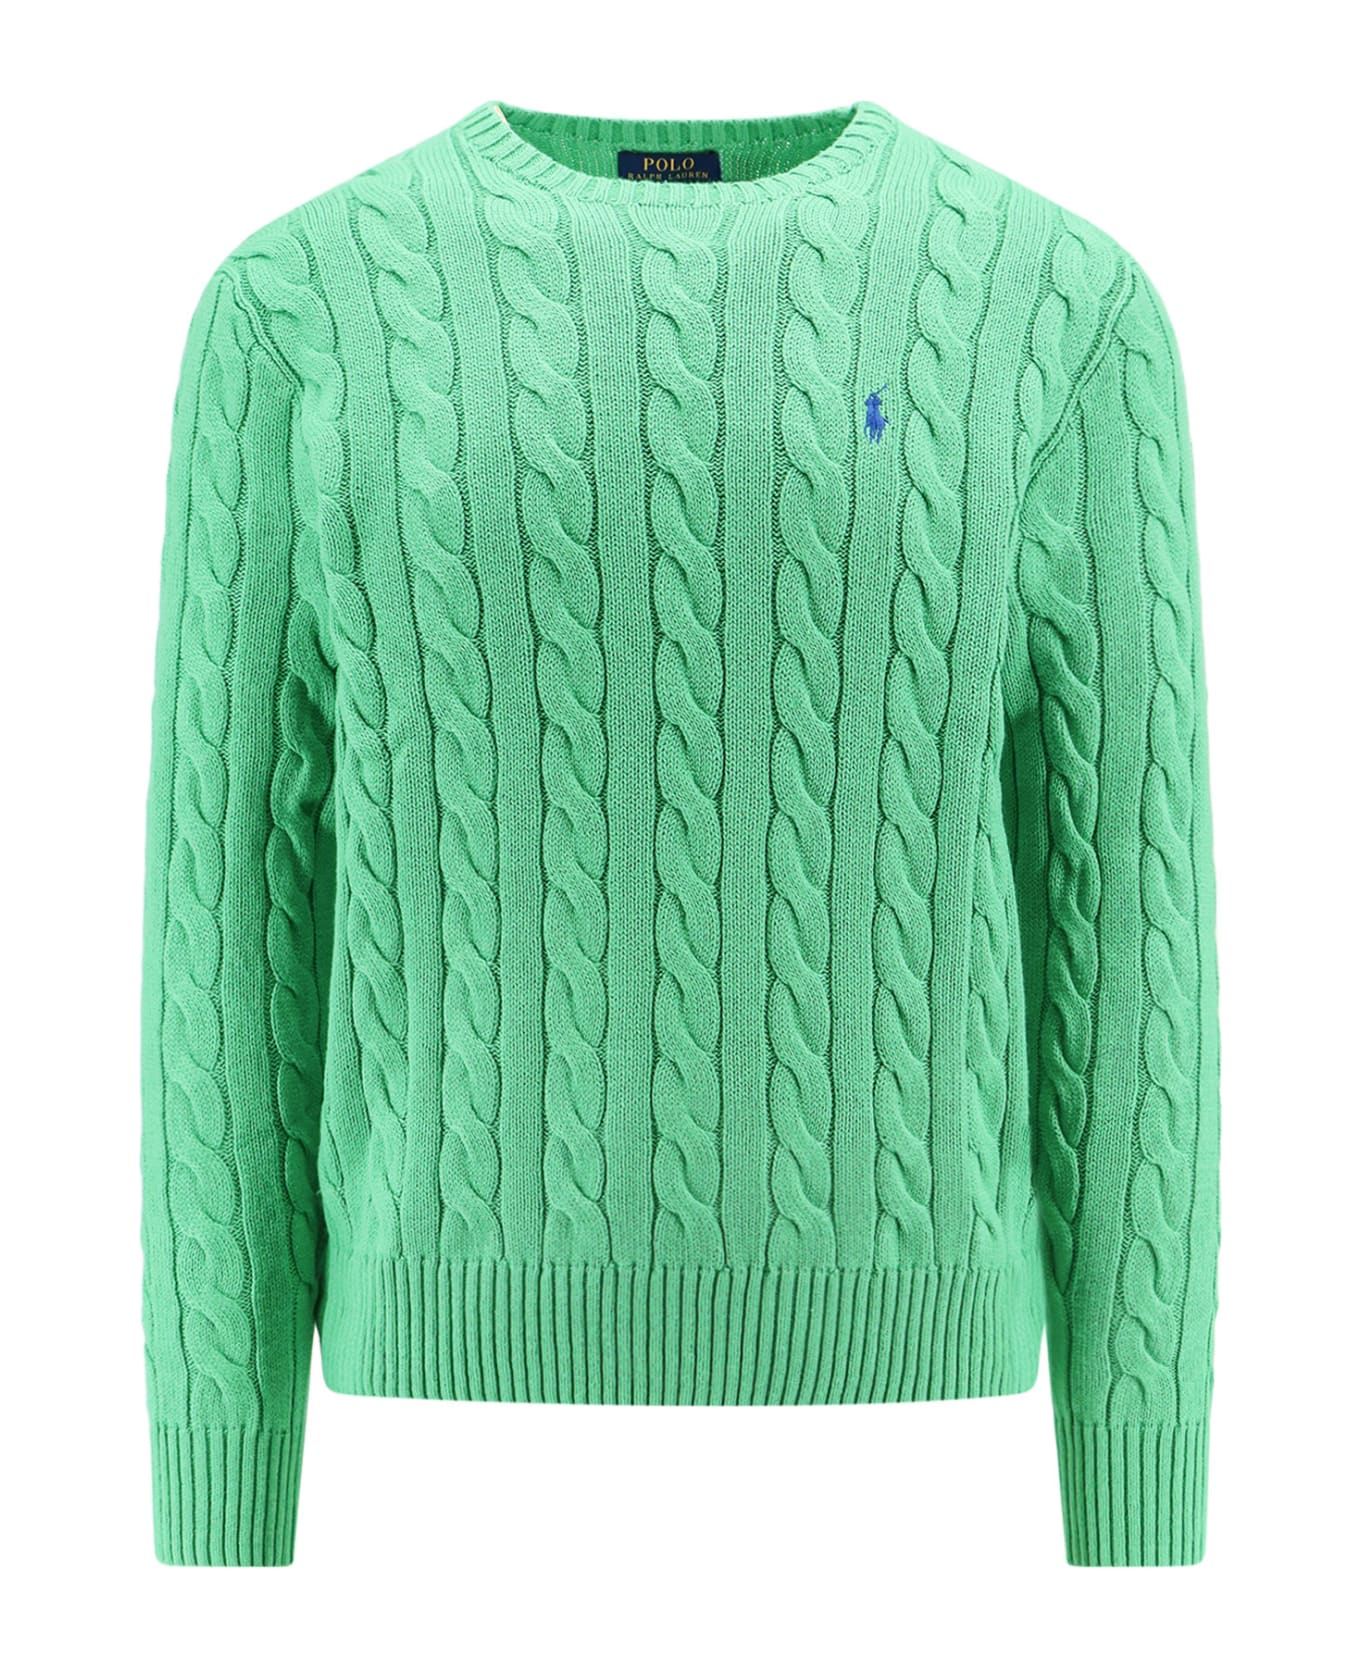 Polo Ralph Lauren Sweater - Green ニットウェア